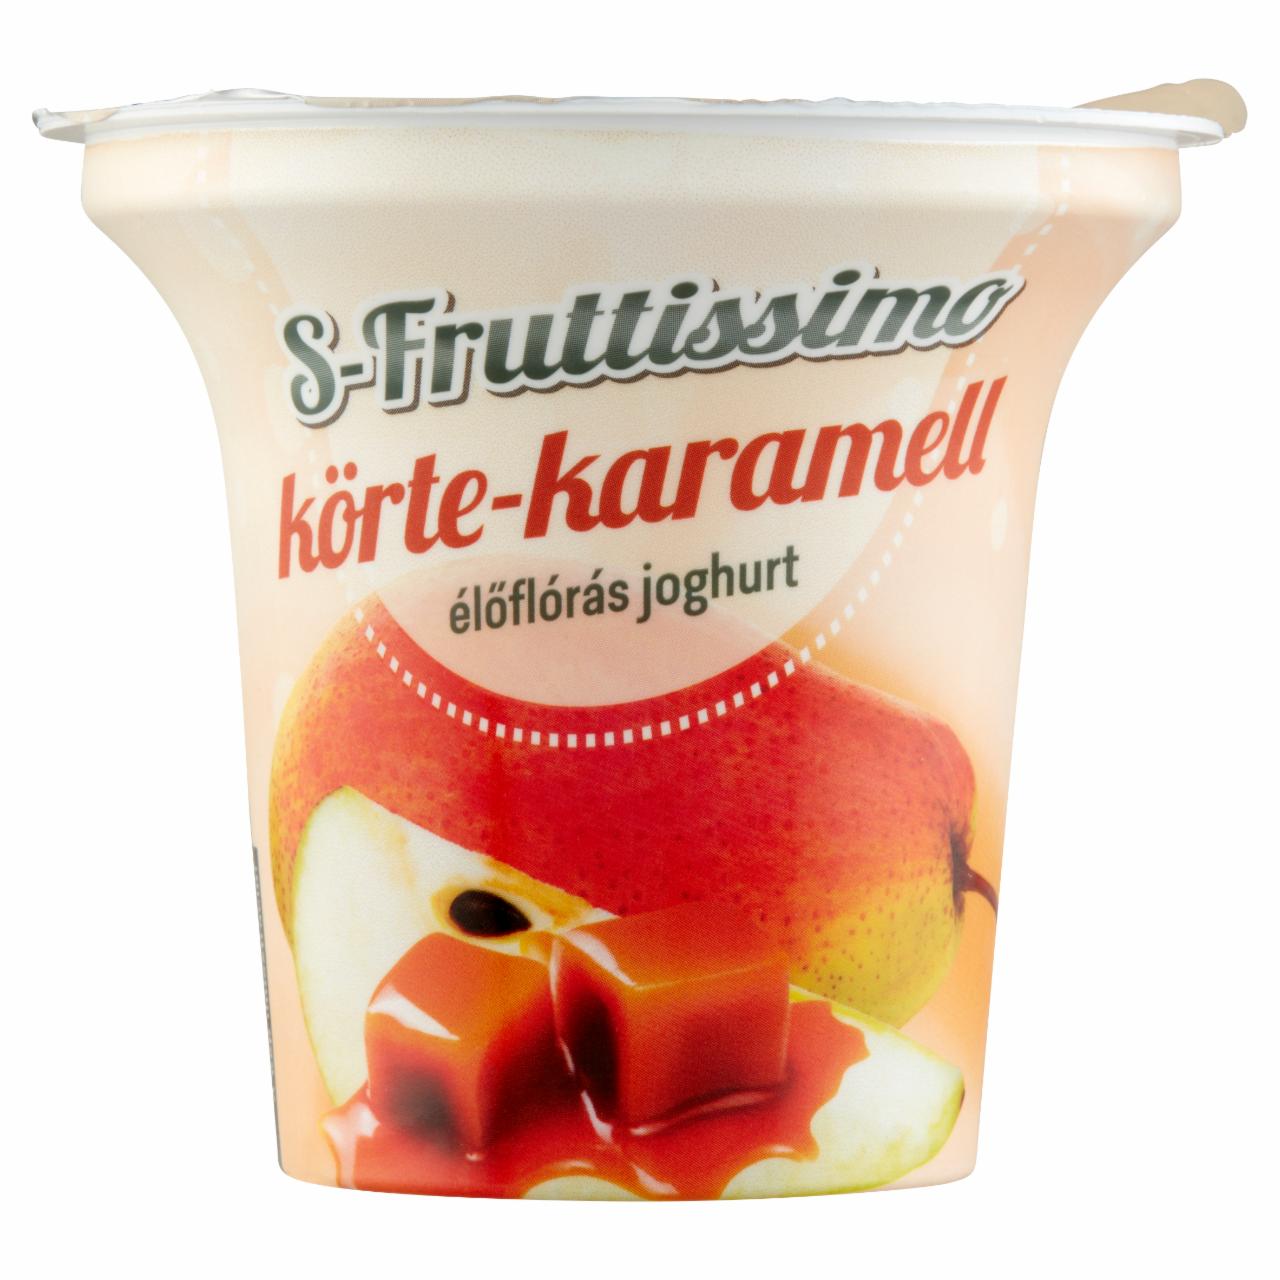 Képek - S-Fruttissimo körte-karamellás élőflórás joghurt 200 g